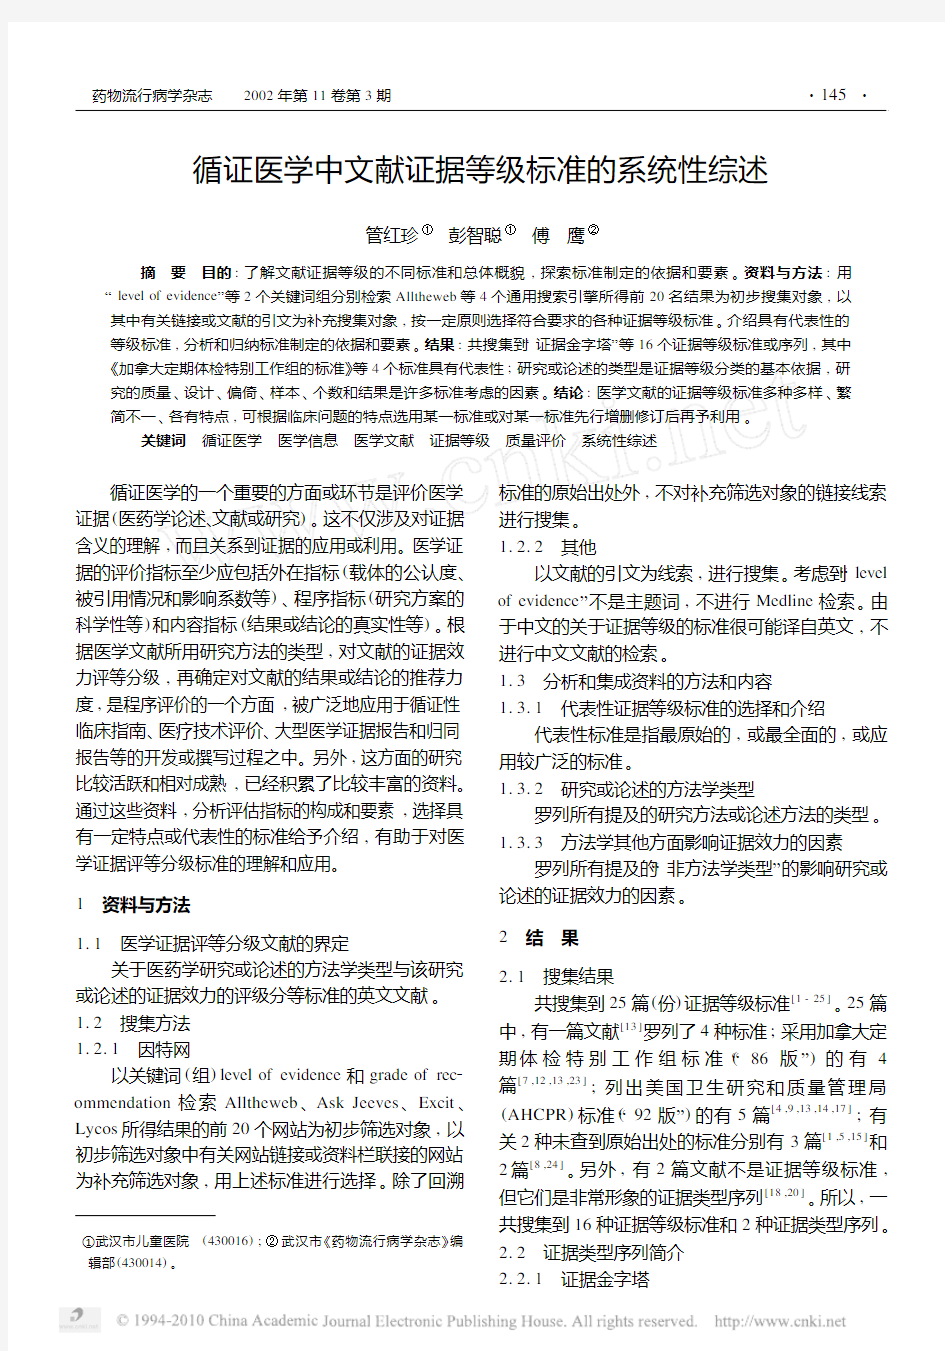 循证医学中文献证据等级标准的系统性综述